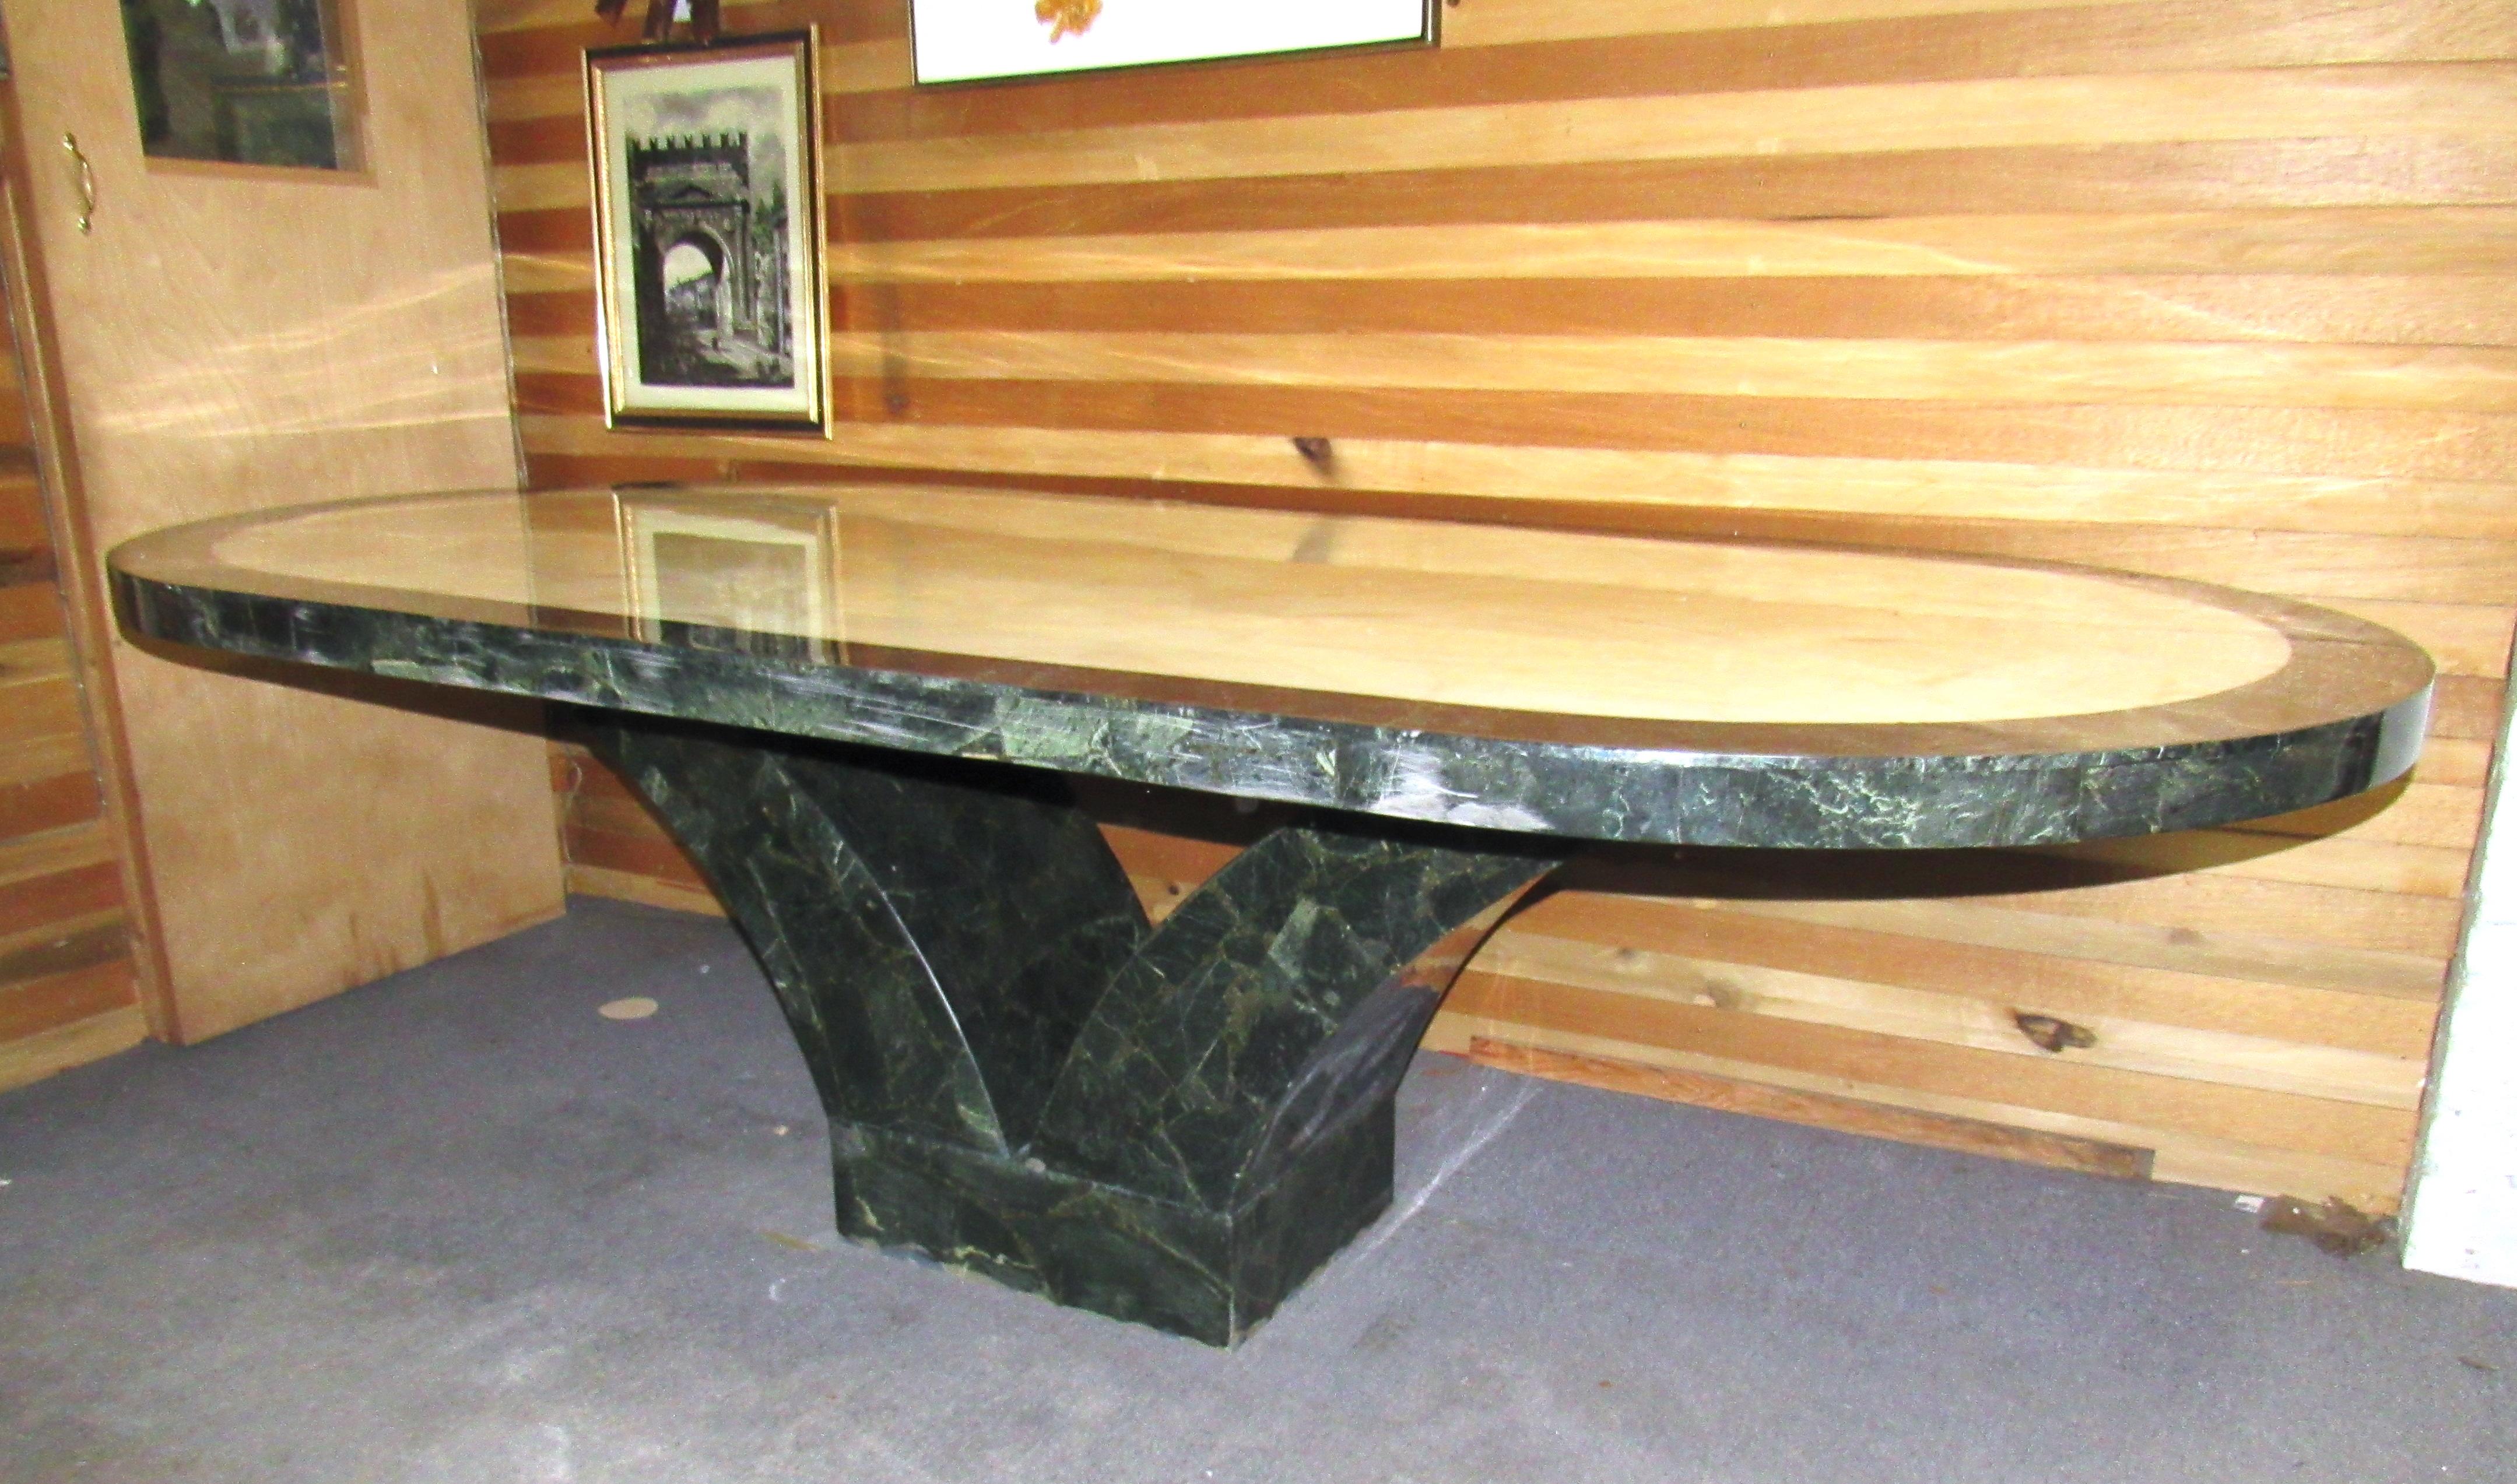 Dieser große Esstisch oder Konferenztisch aus mexikanischem Marmor ist ein modernes Stück aus den 1970er Jahren, das in jeder Wohnung oder in jedem Büro eine kühne Aussage macht. Der obere Tisch ruht auf dem Sockel.
Standort: Brooklyn NY